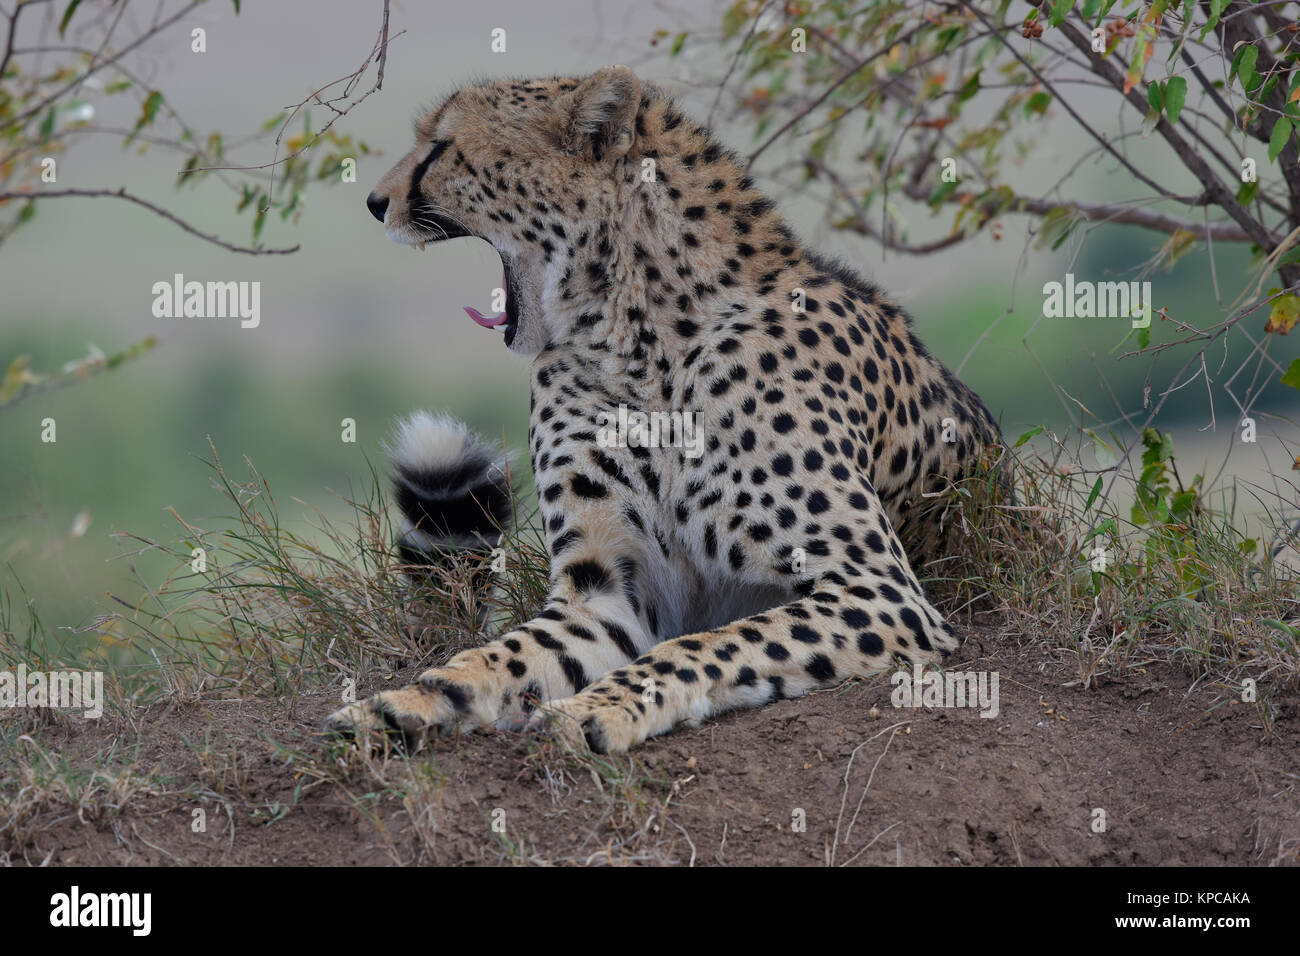 Kenia ist ein hervorragendes Reiseziel in Ostafrika. Berühmt für die freilebenden Tiere und wildwachsenden Pflanzen und ihrer natürlichen Schönheit. Cheetah Porträts Stockfoto